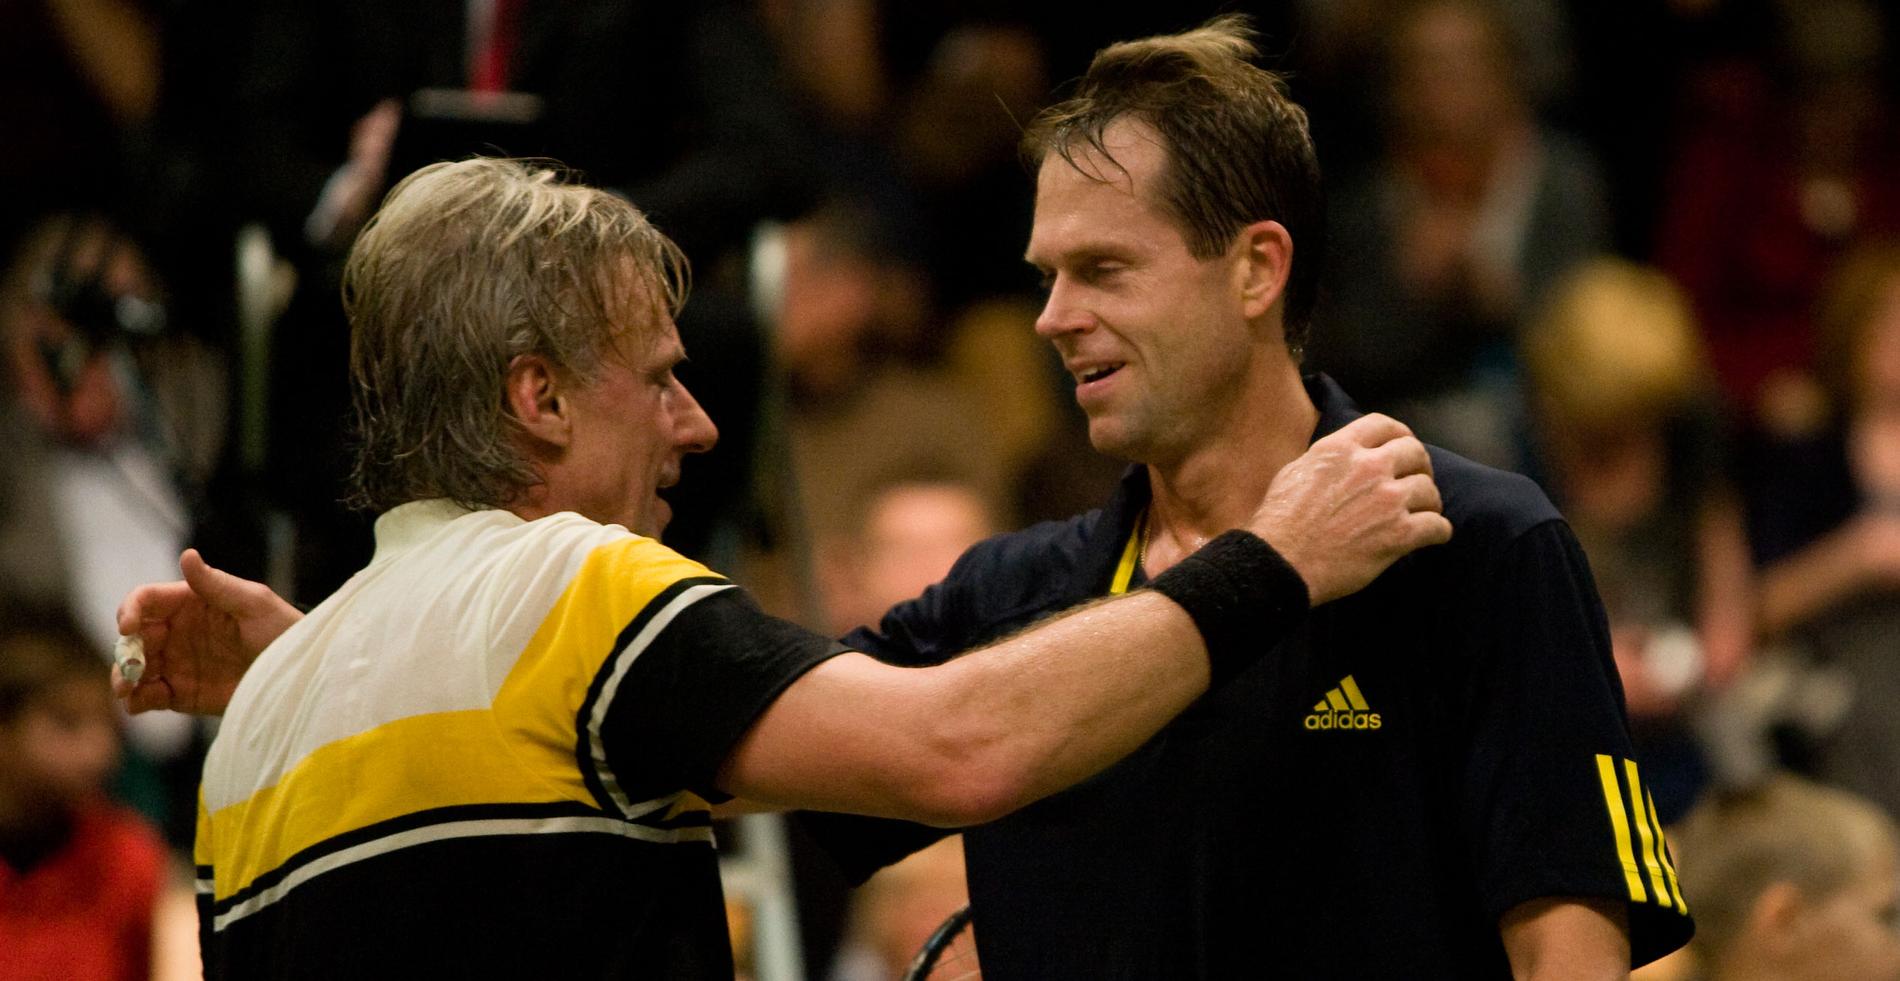 Björn Borg och Stefan Edberg tackar varandra för god match efter mötet i Legends Live 2008.